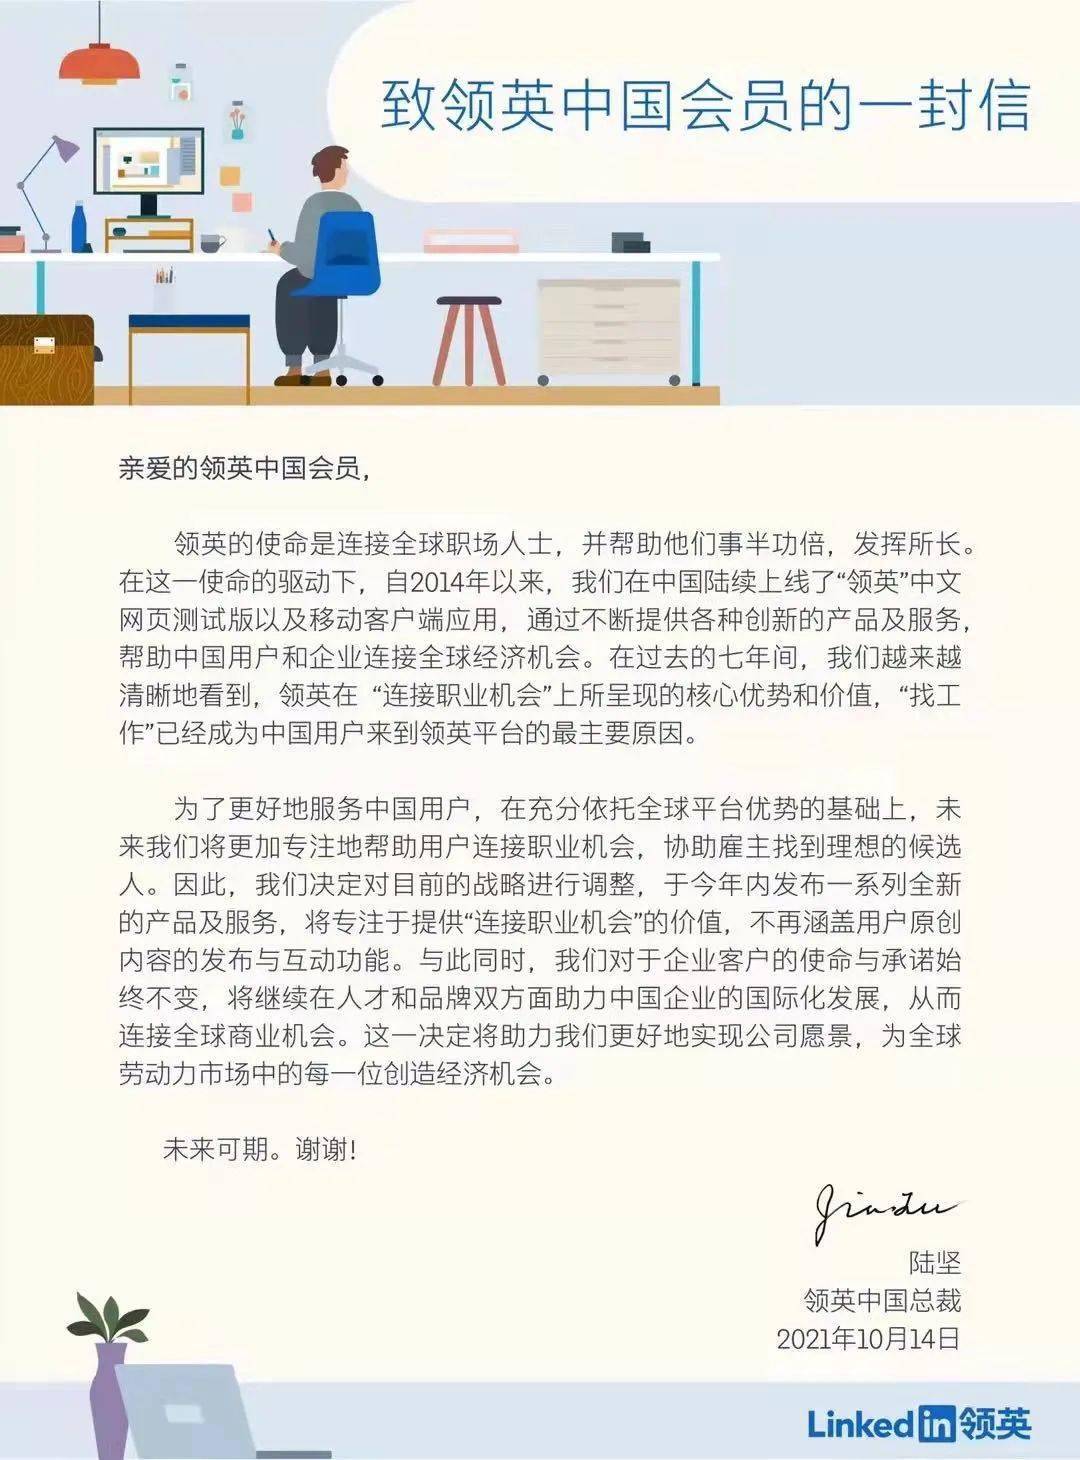 领英中国发布致领英中国会员的一封信.jpeg 